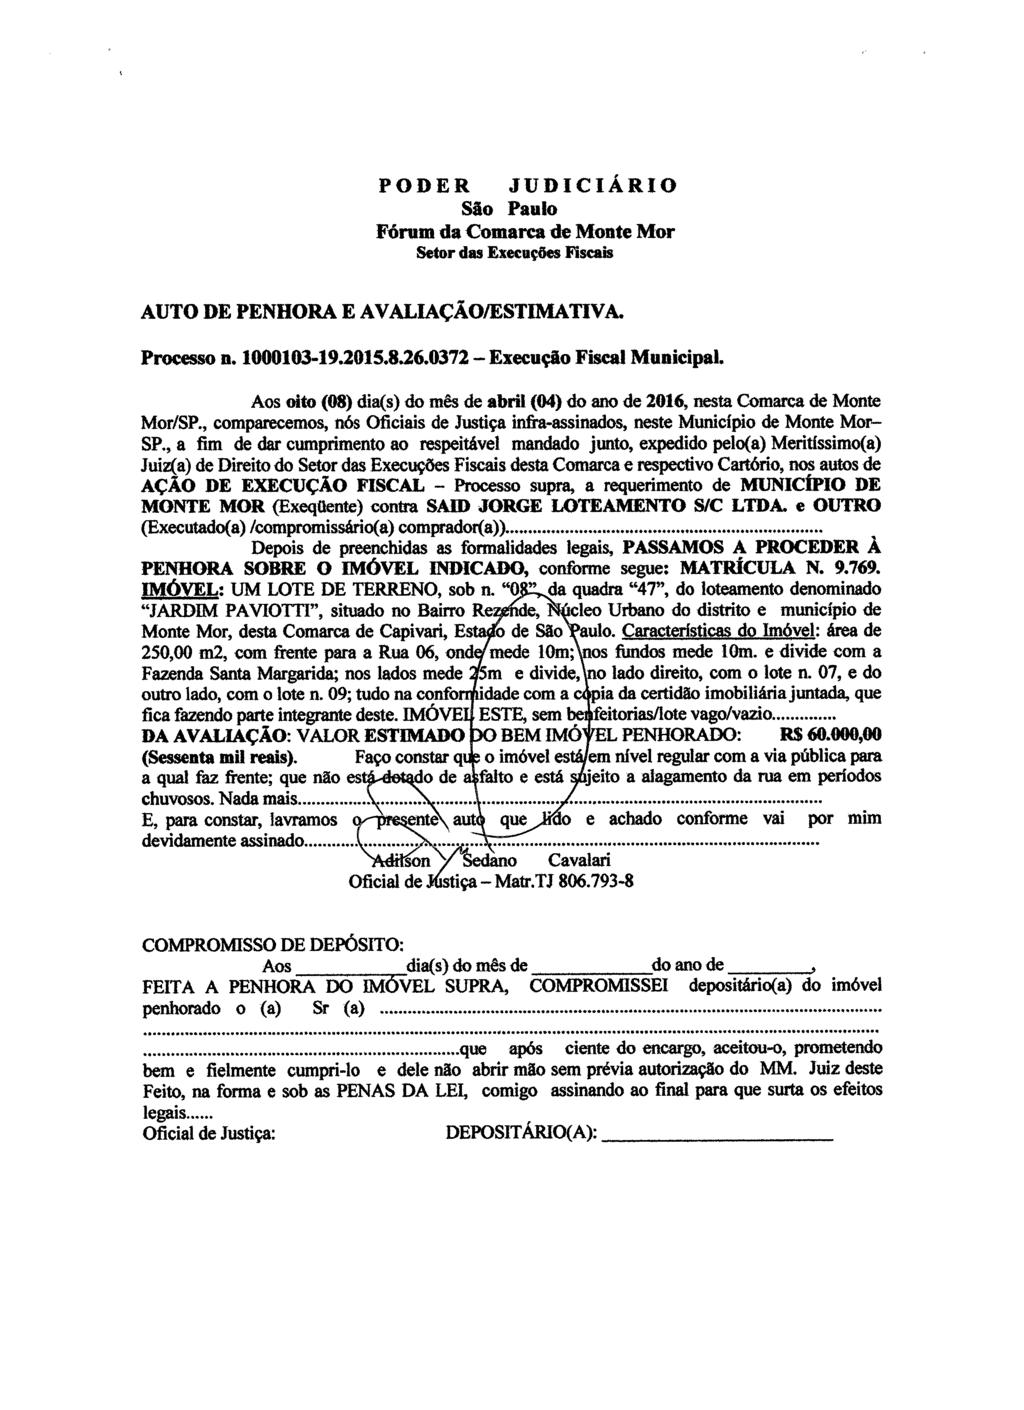 fls. 38 Este documento é cópia do original, assinado digitalmente por HUMBERTO PUGIN JUNIOR, liberado nos autos em 29/04/2016 às 10:45.